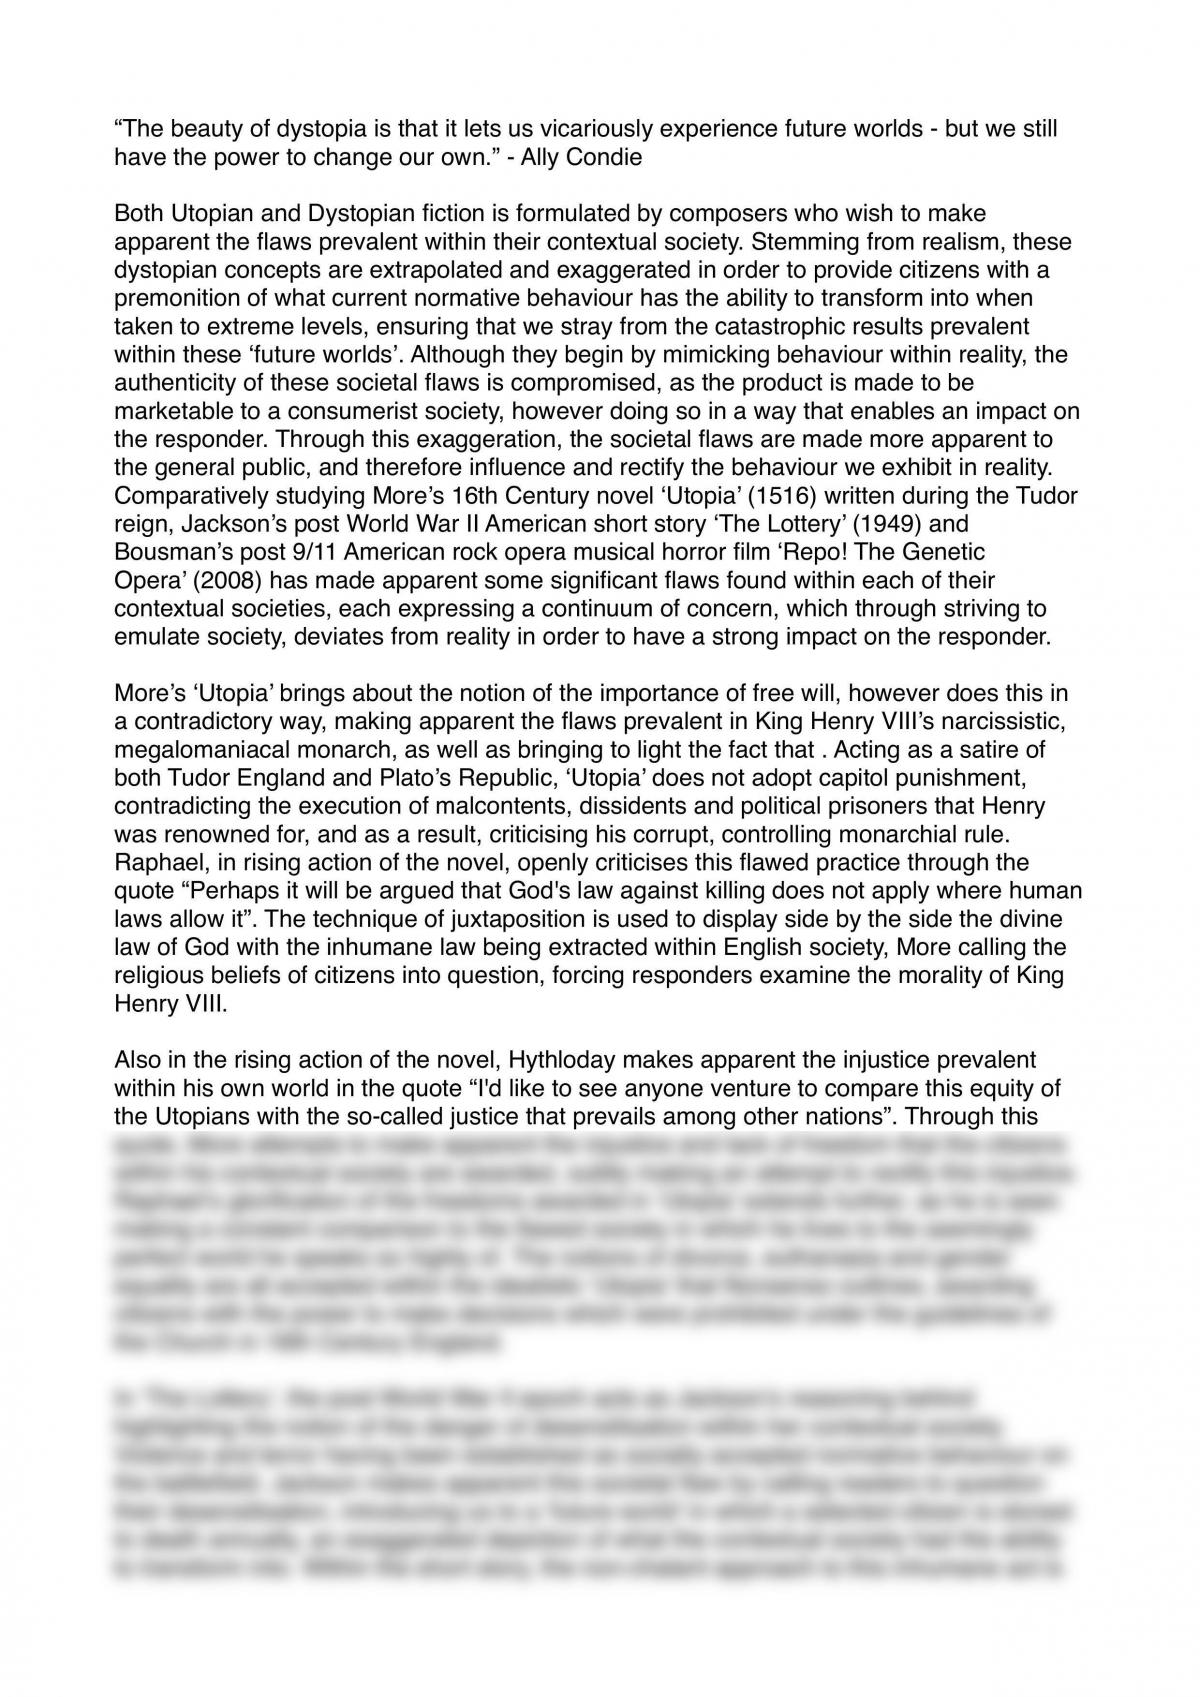 Utopia/Dystopia Essay - 'Utopia' (1516), 'The Lottery' (1949) and ‘Repo! The Genetic Opera’ (2008) - Page 1